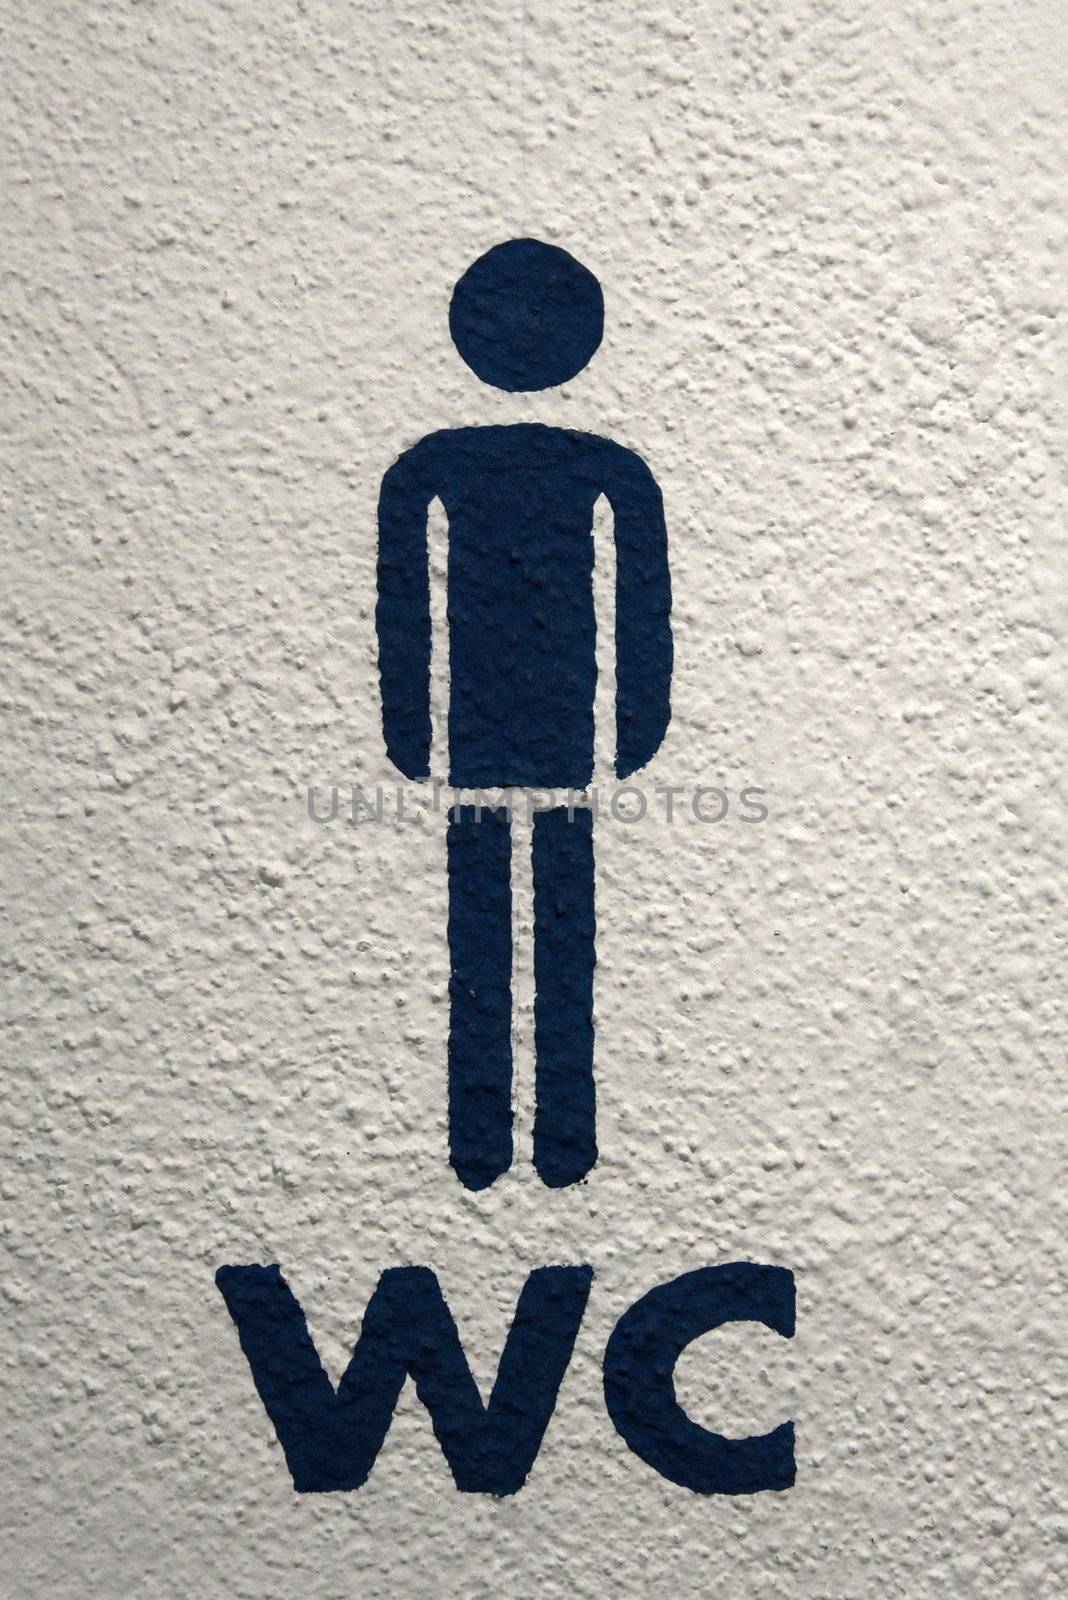 Men's toilet sign on white wall